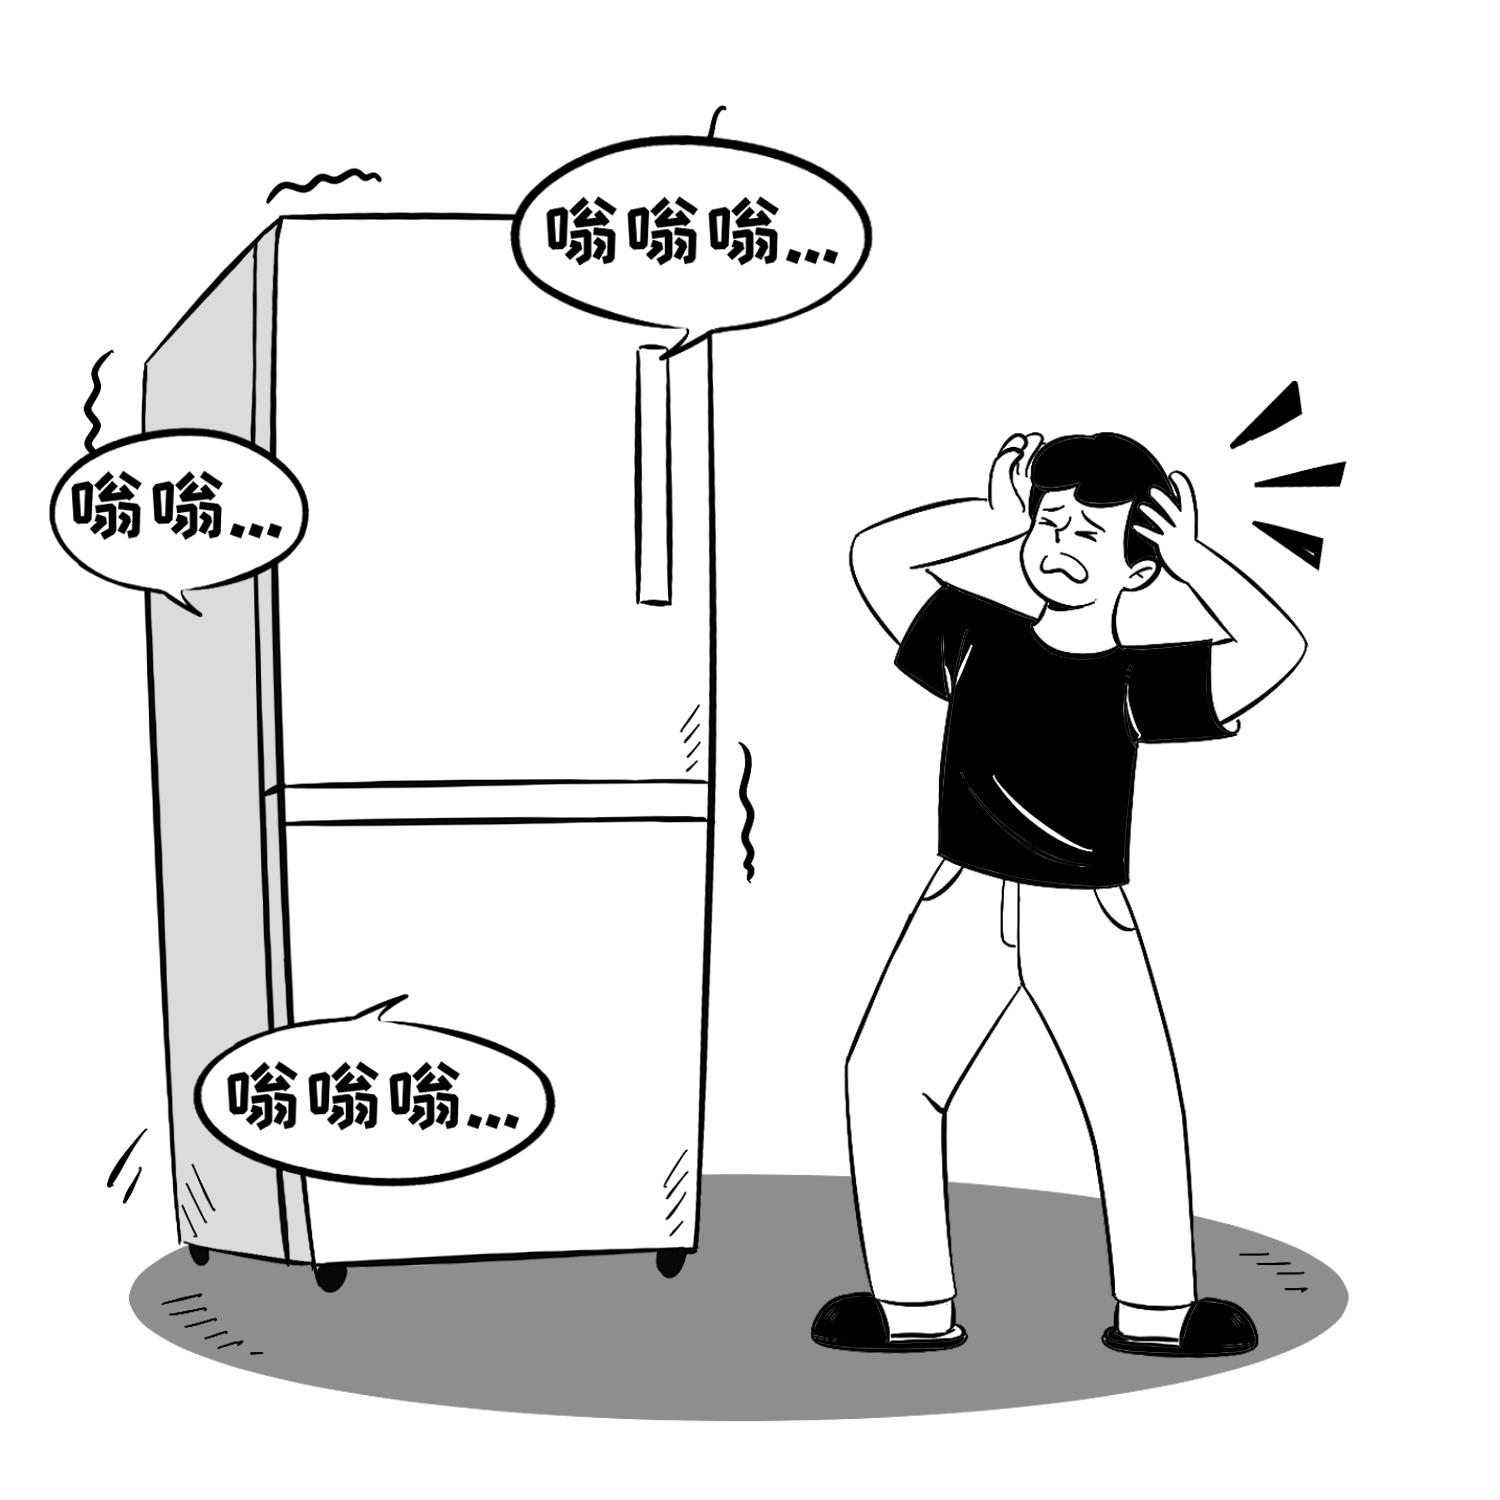 冰箱噪音大怎麼處理 冰箱經常發出嗡嗡聲是什麼原因